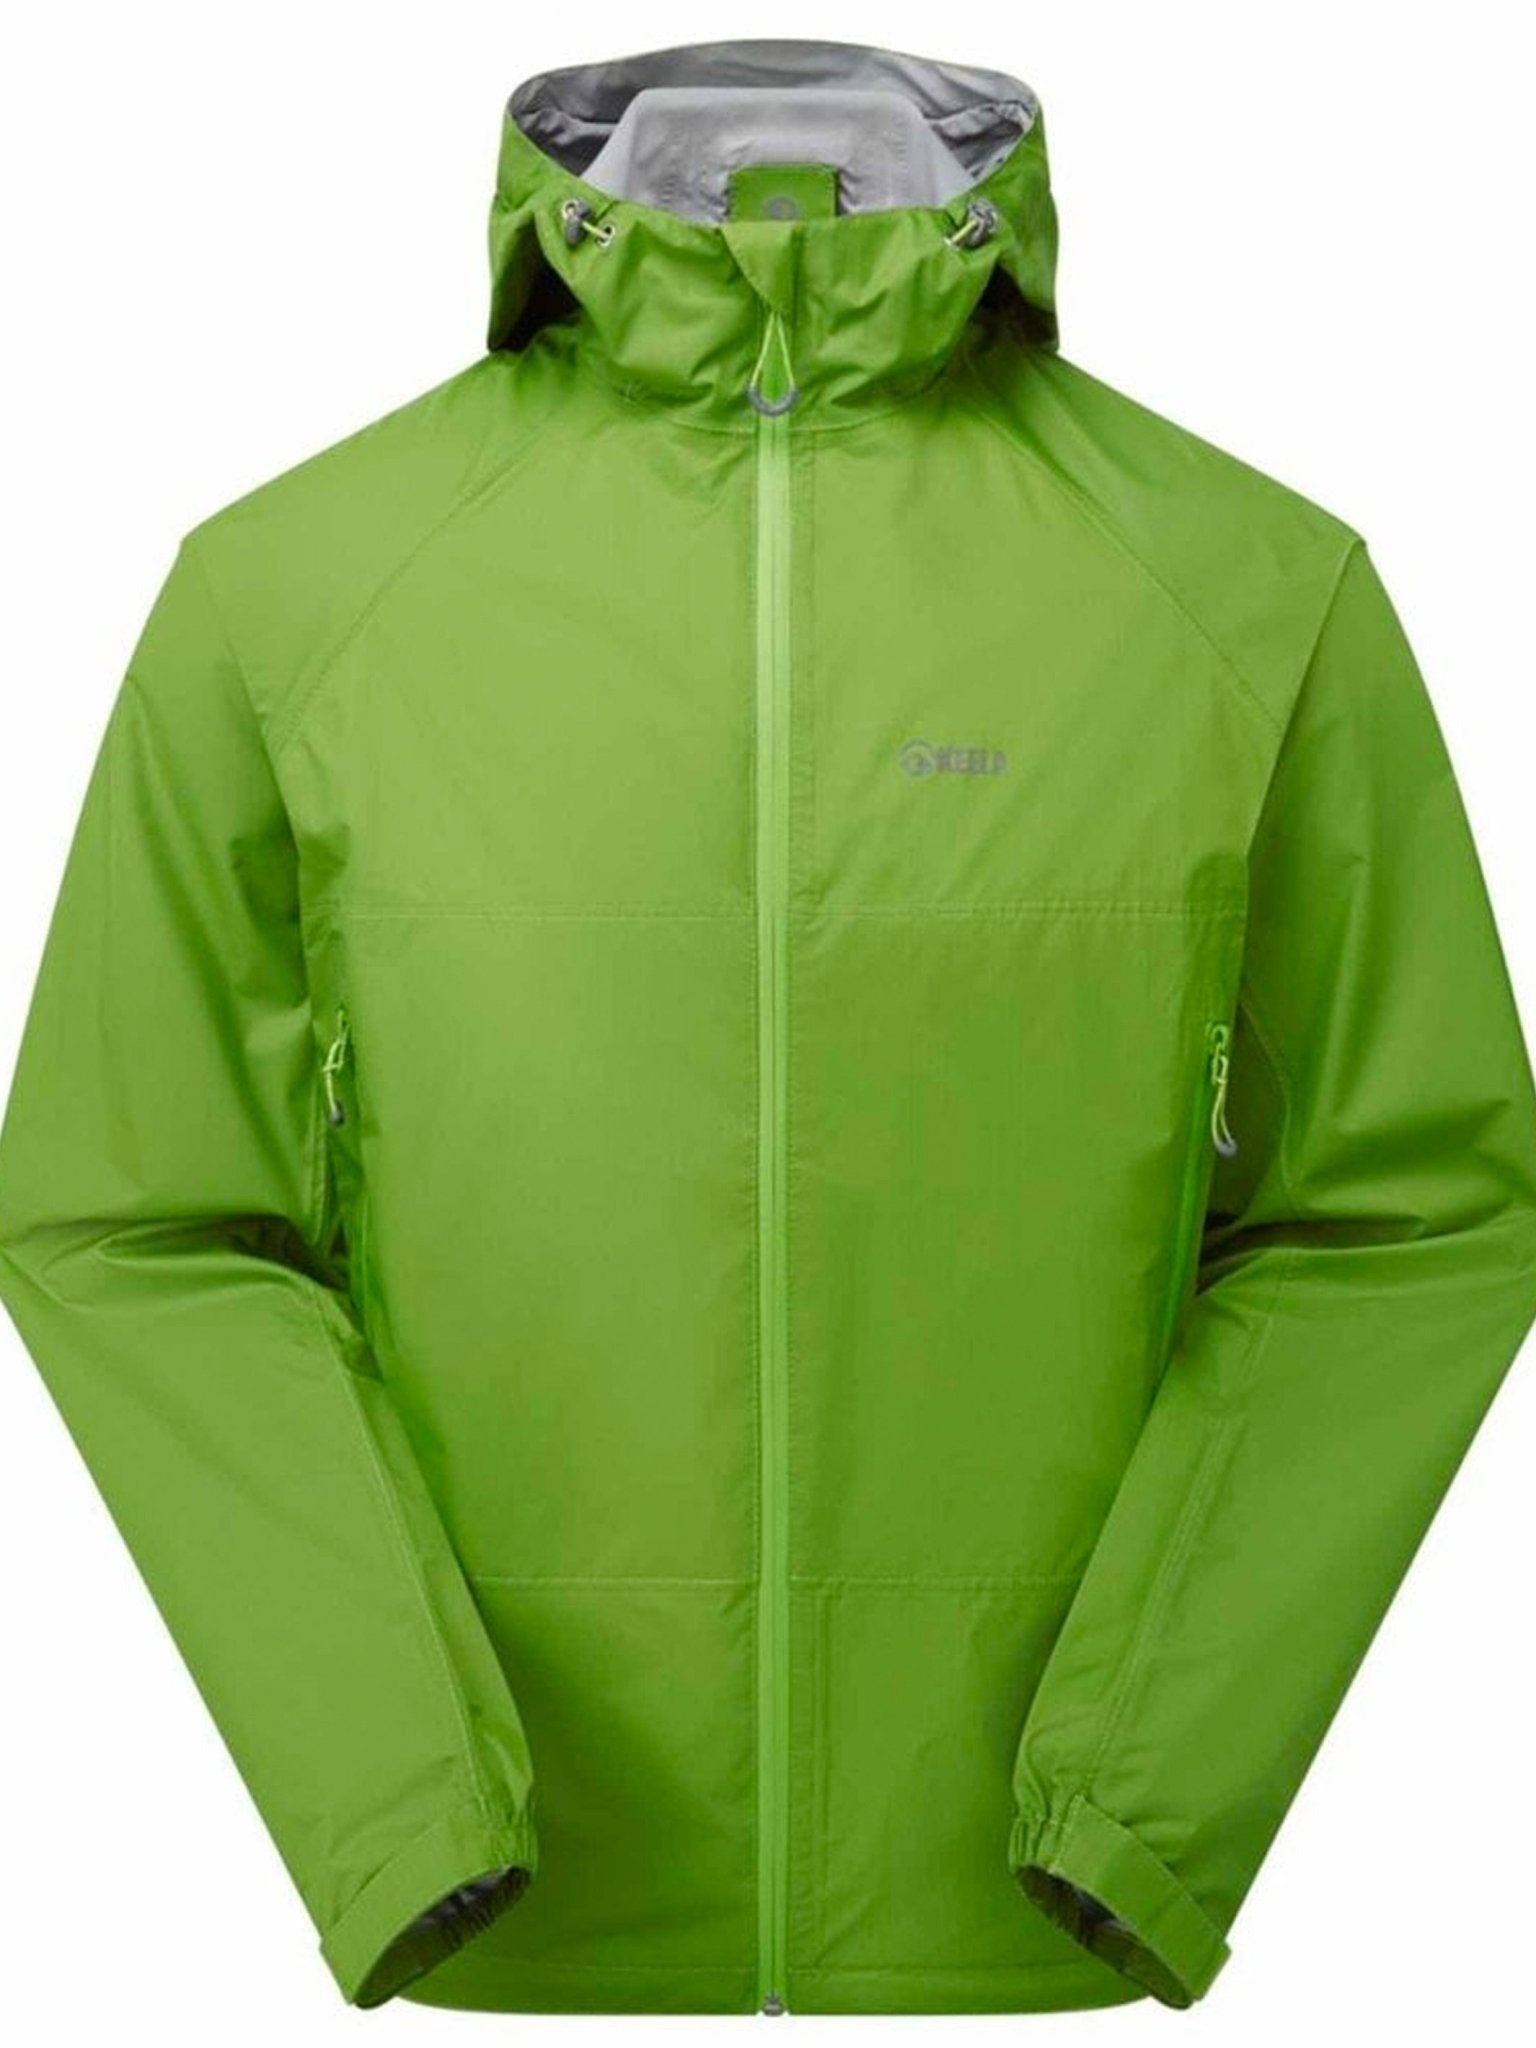 4elementsclothingKeelaKeela Outdoors - Keela Mens Paklite Waterproof packable, Breathable lightweight Jacket / coat with hoodOuterwear02420-265000-0-111